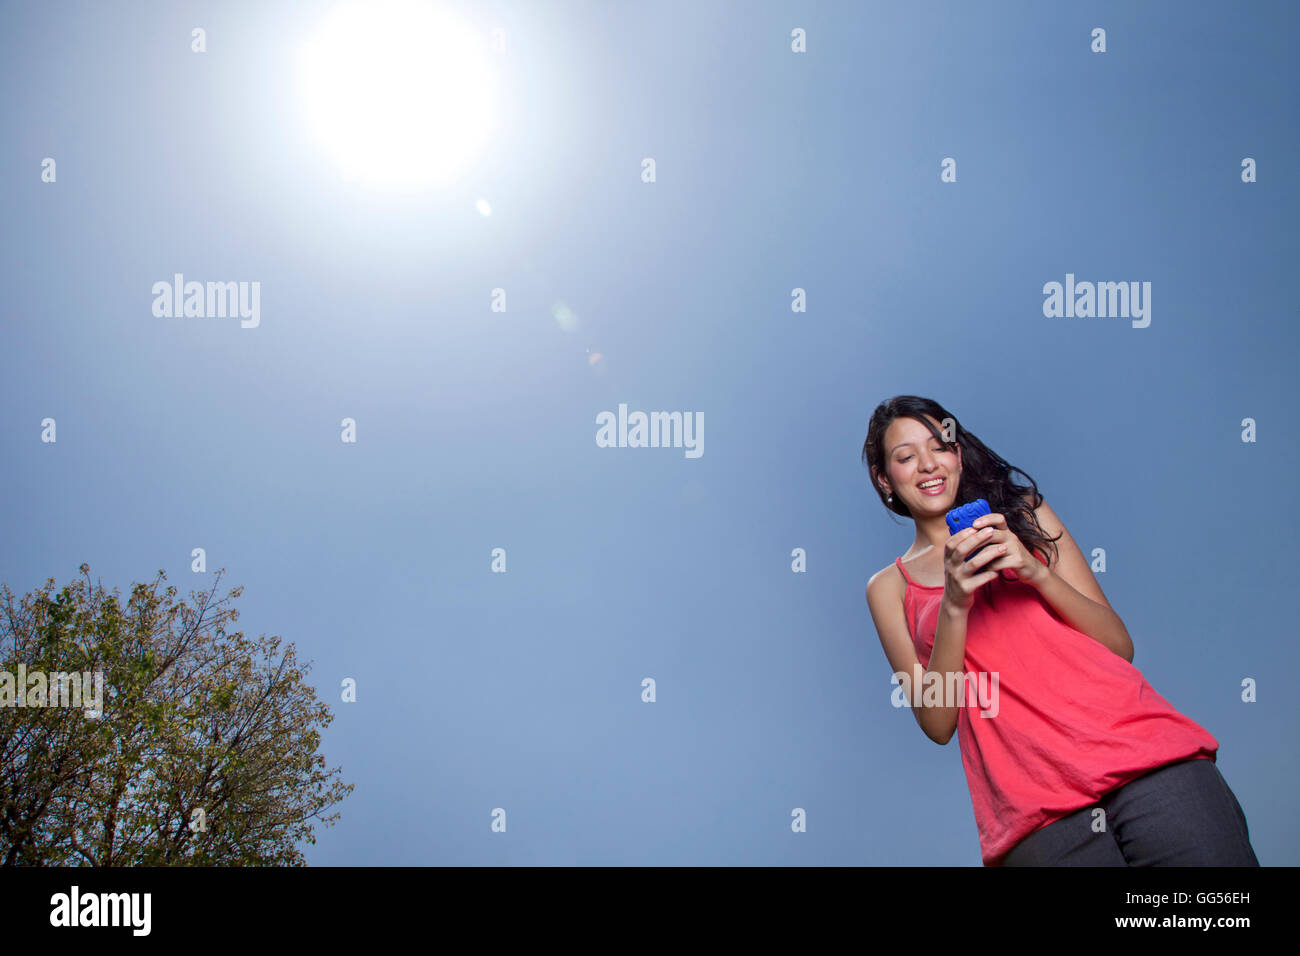 Basso angolo di visione della donna per la messaggistica di testo in una giornata di sole Foto Stock